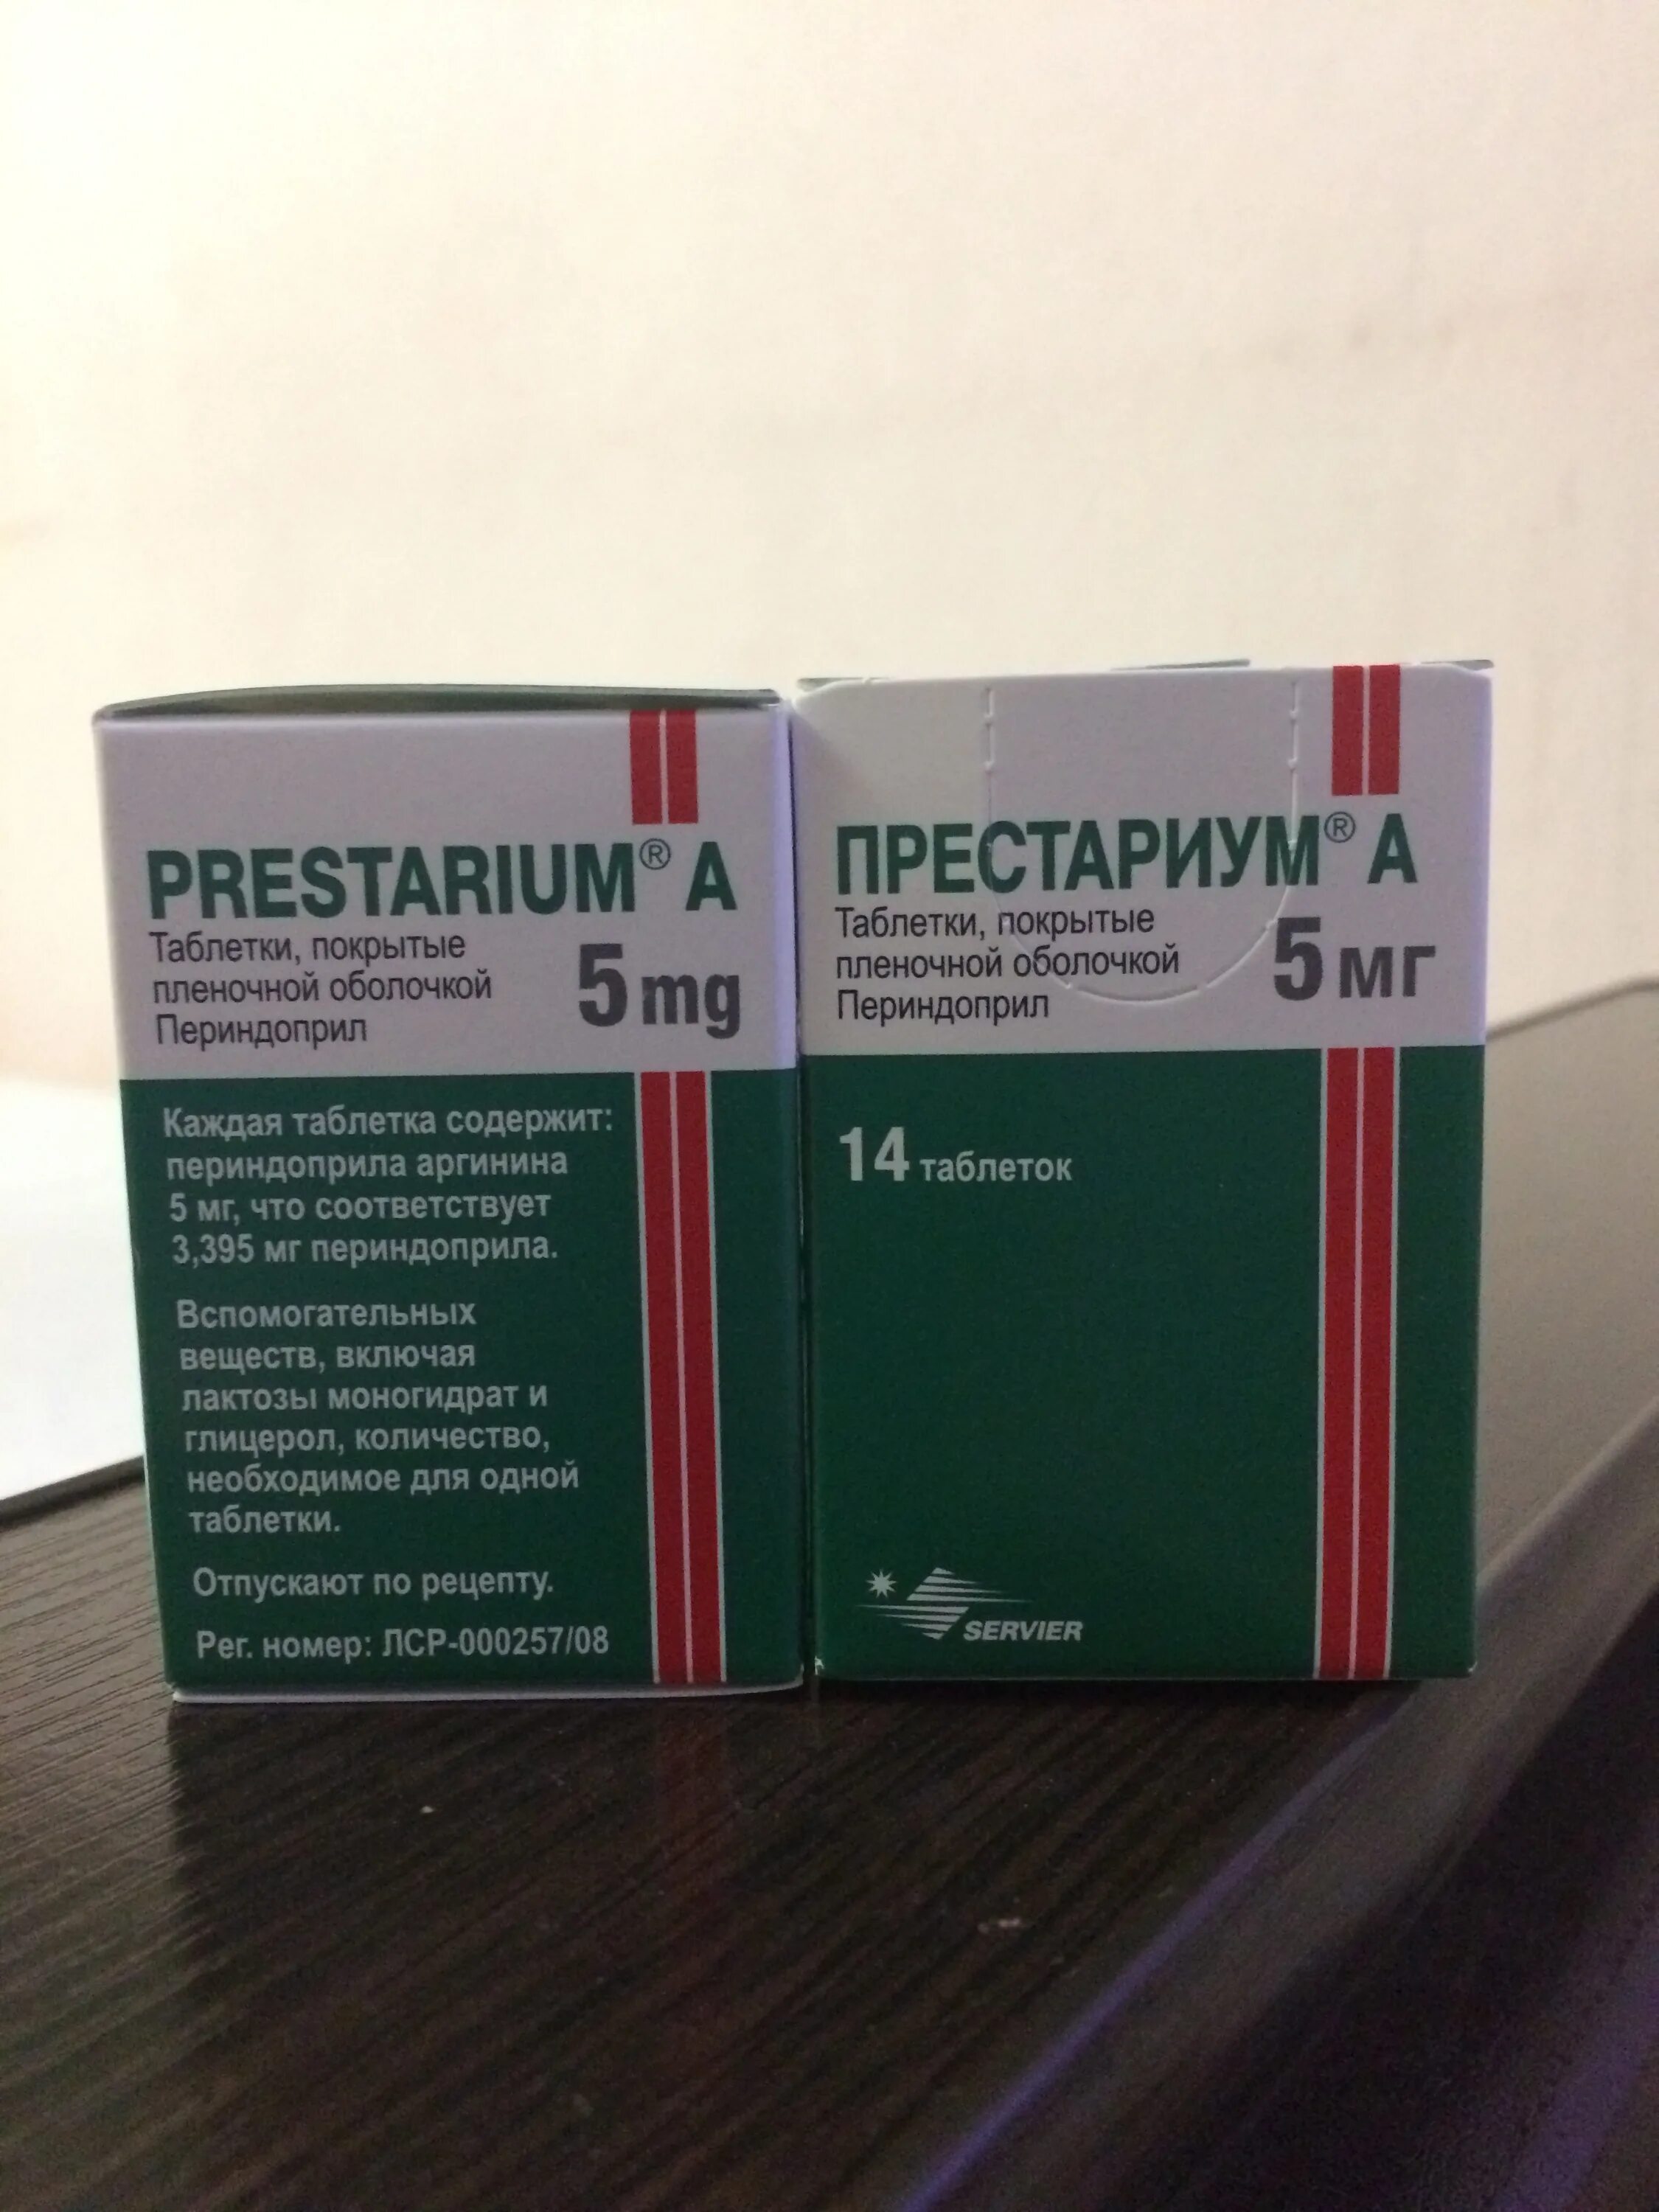 Аналог престариума 5 мг. Престариум 2,5 мг таблетки. Престариум 5 мг таблетки. Таблетки от давления Престариум 5. Престариум 4 мг.